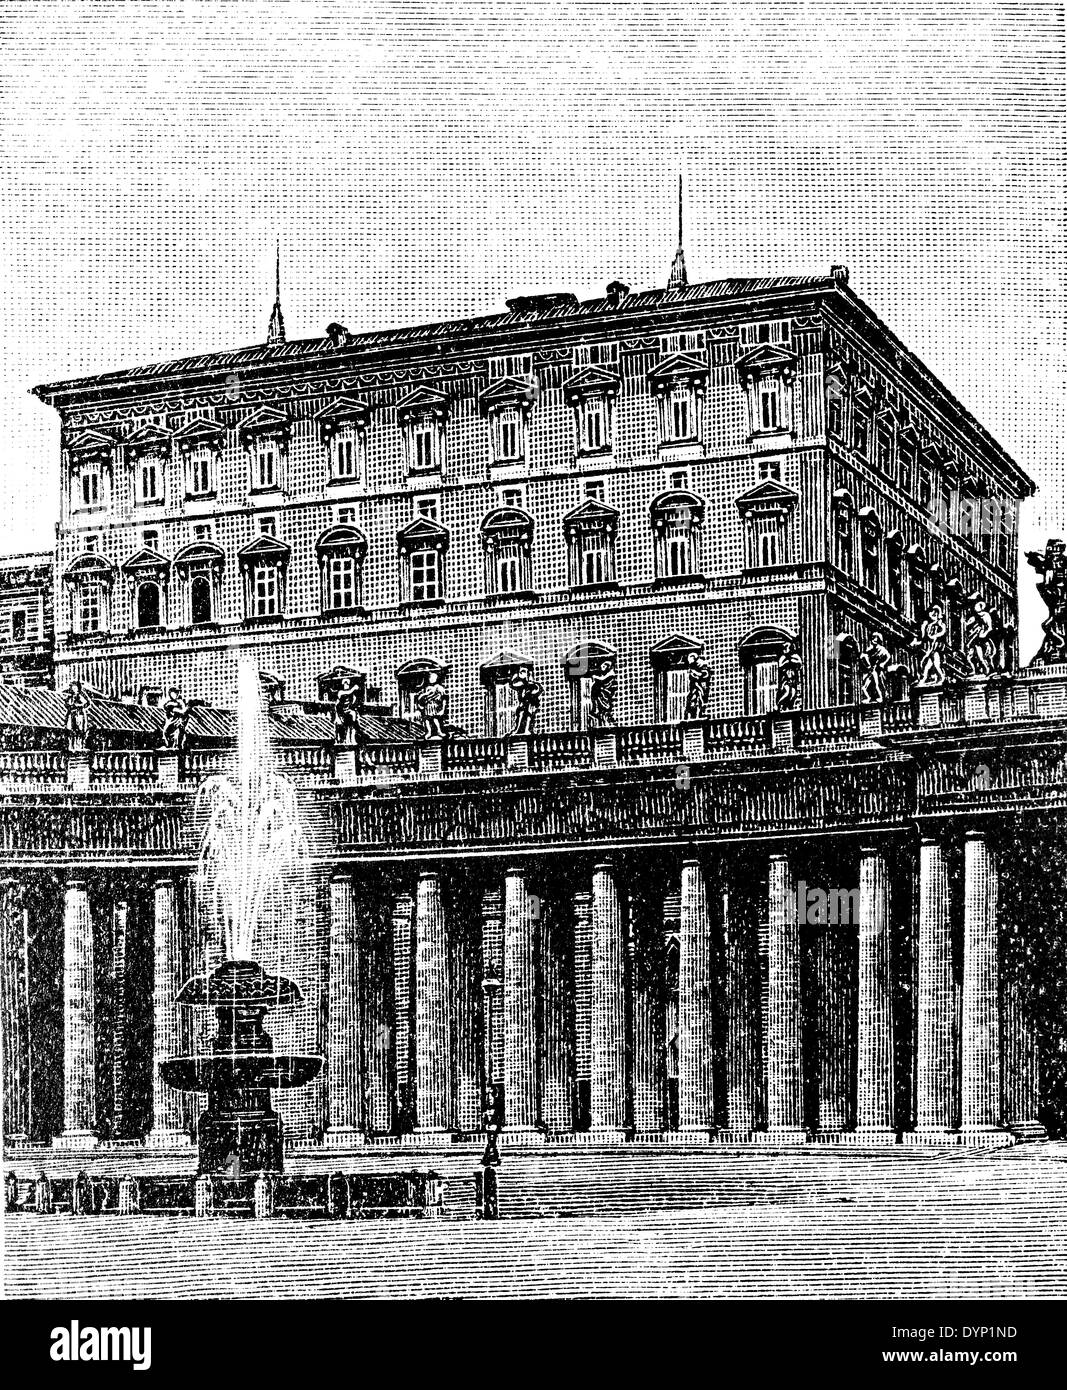 Apostolischen Palast von St. Peter's Square, Vatikan, Rom, Italien, Illustration aus sowjetischen Enzyklopädie, 1928 Stockfoto